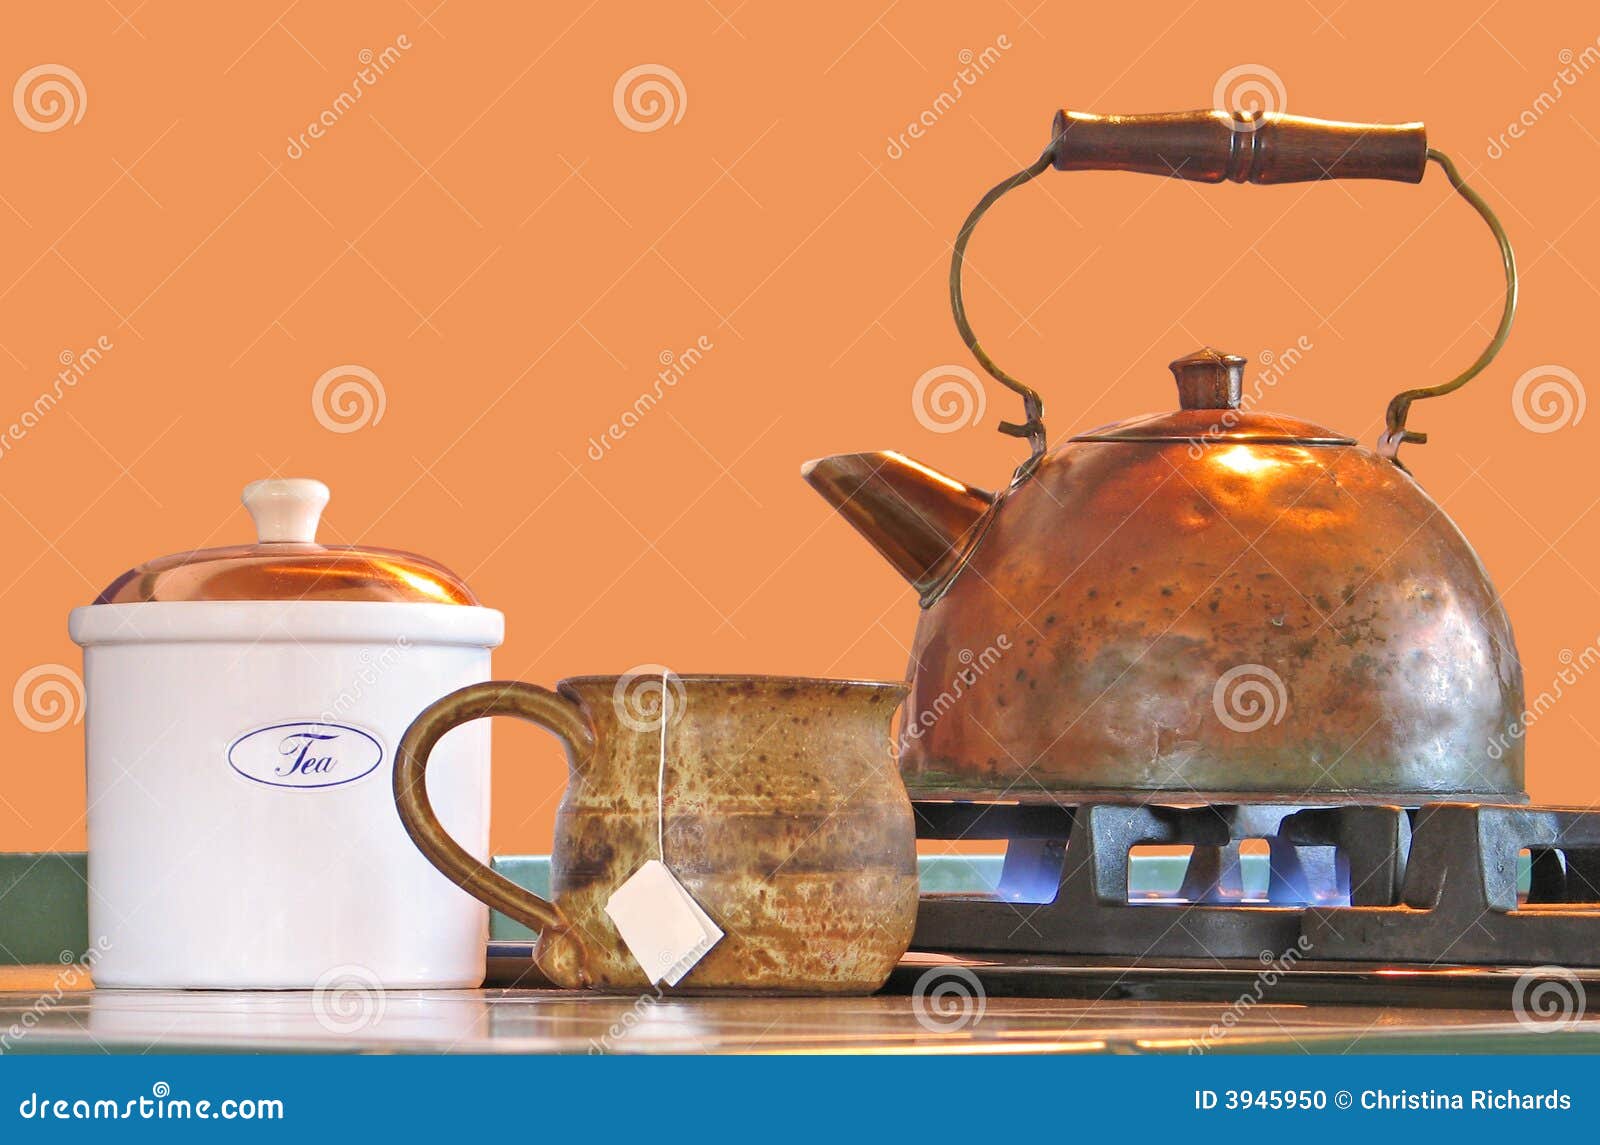 Поставь чайник на 2 минуты. Чайник для плит. Медный чайник с чашками. Чайник для печи. Поставил чайник на плиту.